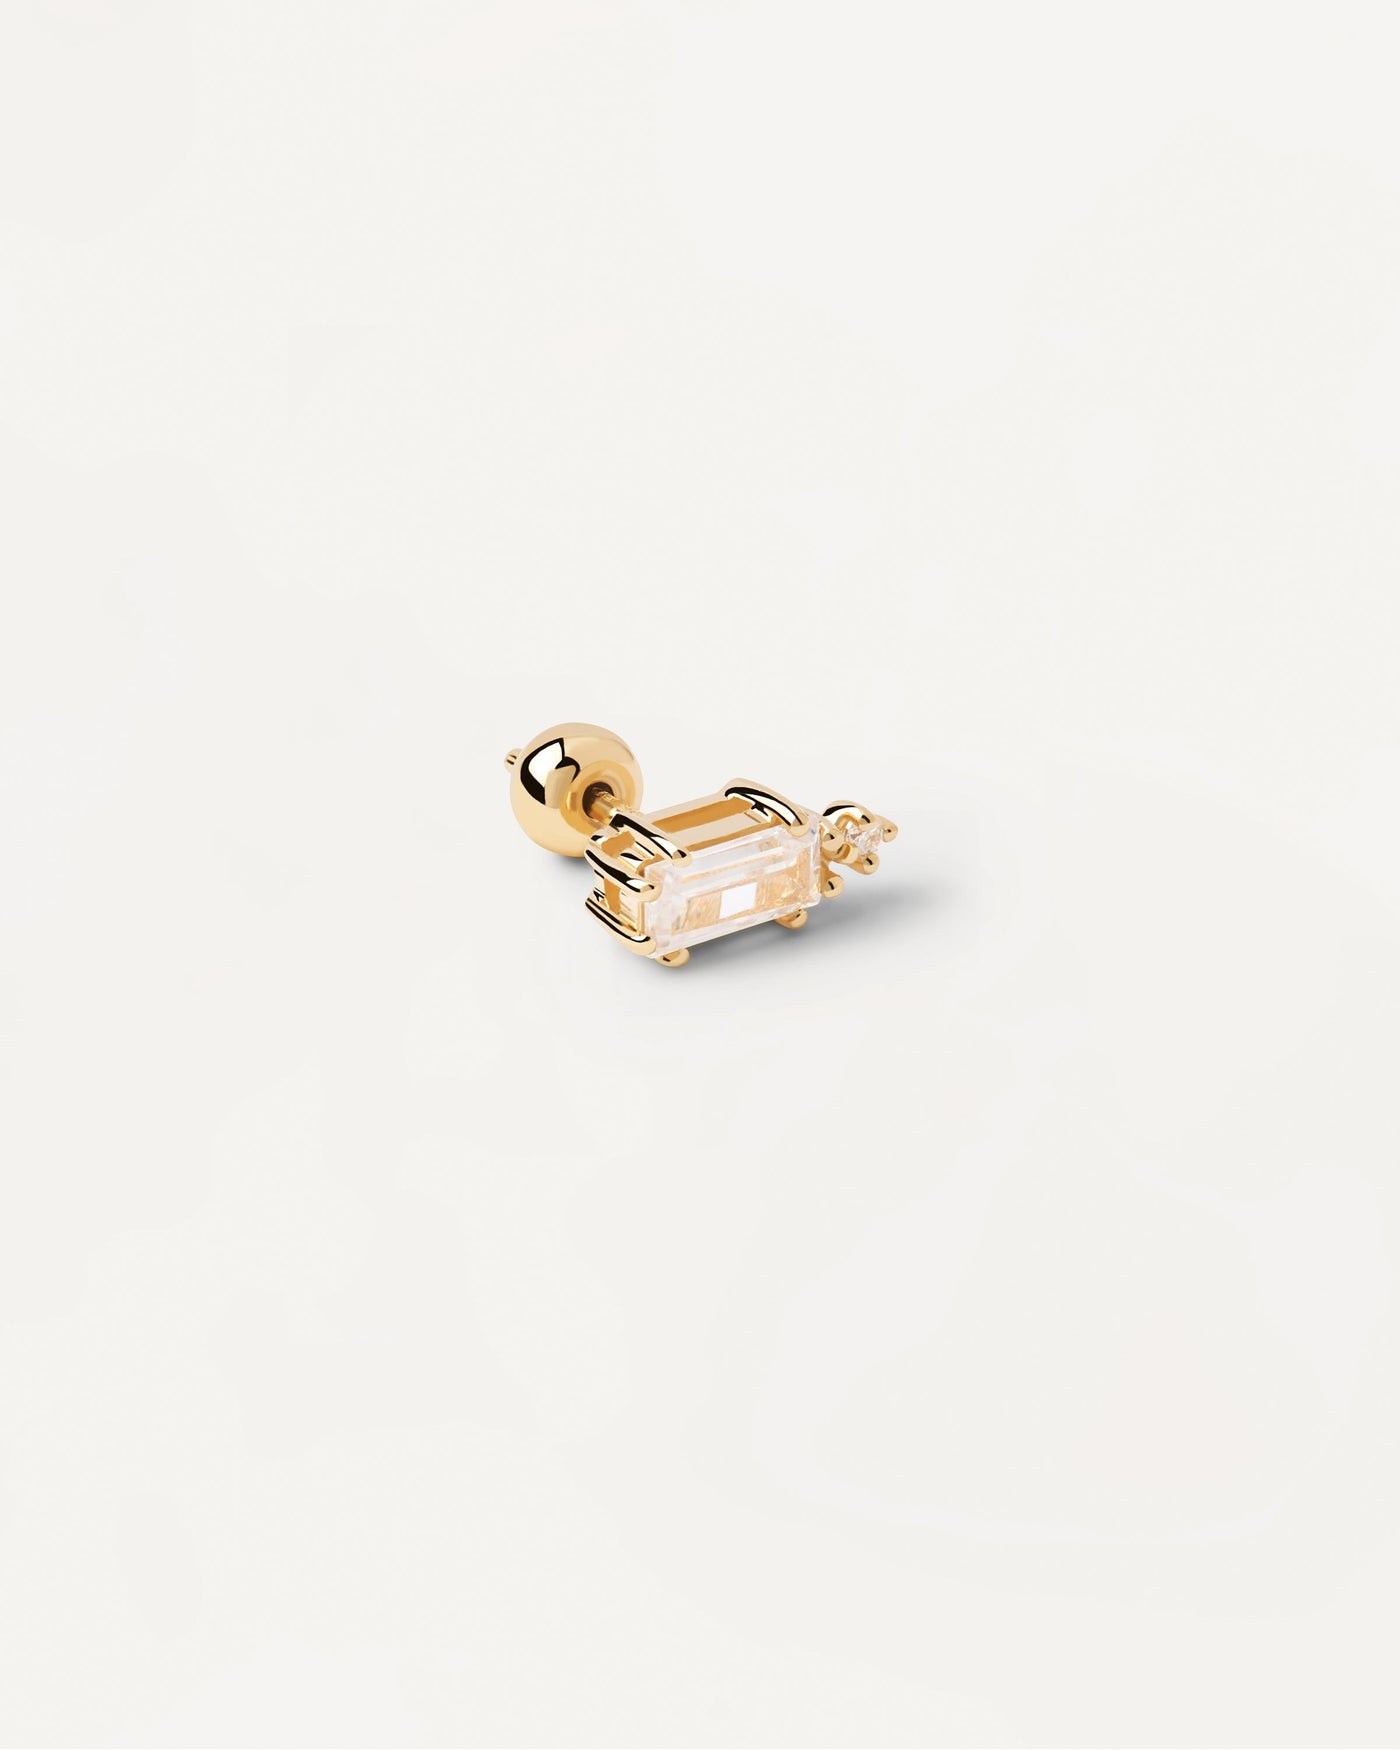 Sortiment 2023 | Bea Einzelner Ohrring. Vergoldeter Piercing-Ohrring mit weißem Kristall im Baguette-Schliff. Erhalten Sie die neuesten Produkte von PDPAOLA. Geben Sie Ihre Bestellung sicher auf und erhalten Sie diesen Bestseller. Kostenloser Versand.